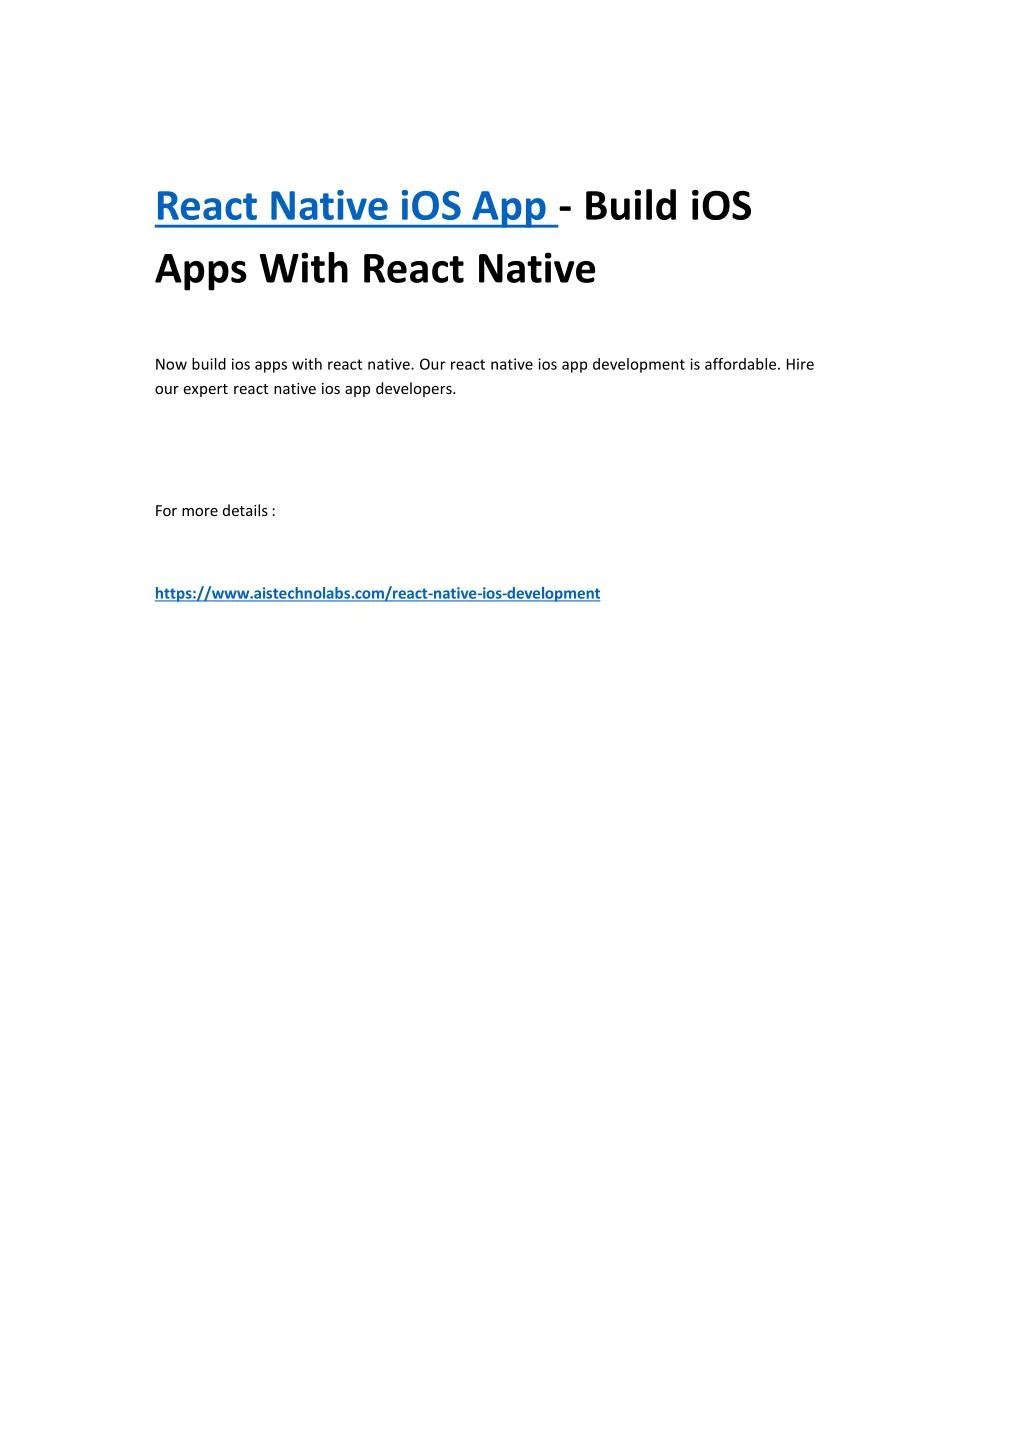 react native ios app build ios apps with react